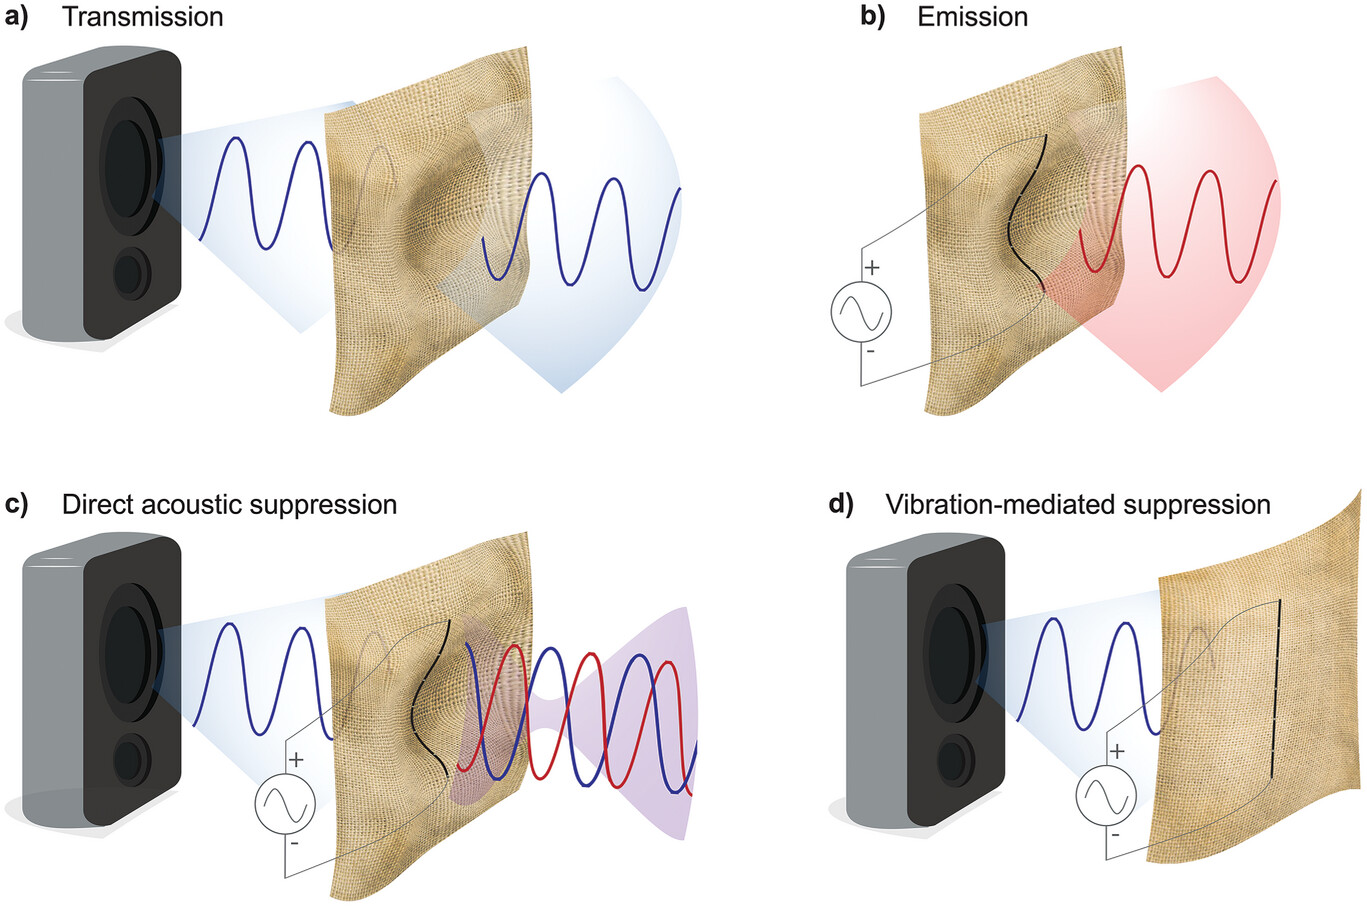 Quatro diagramas mostram como o som geralmente é transmitido através do tecido, como o novo design gera som e como pode suprimir o som.